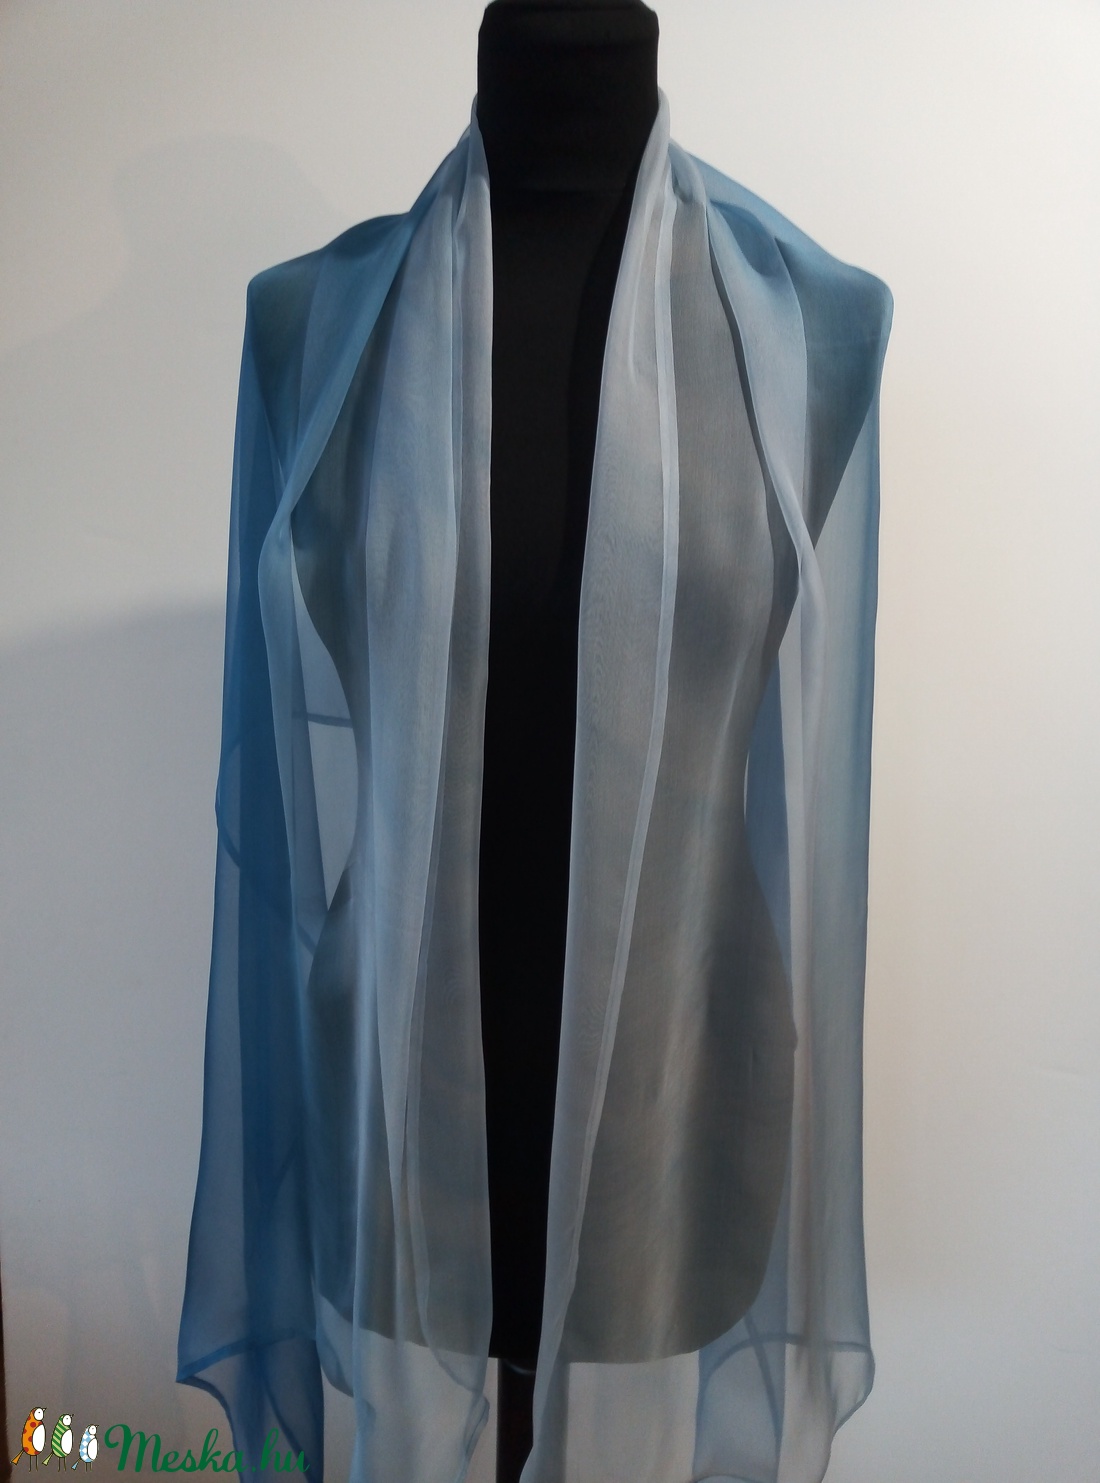 szürkés-kék árnyalatú chiffon szövésű,  könnyed selyem sál selyem  (172x72cm ) - ruha & divat - sál, sapka, kendő - sál - Meska.hu